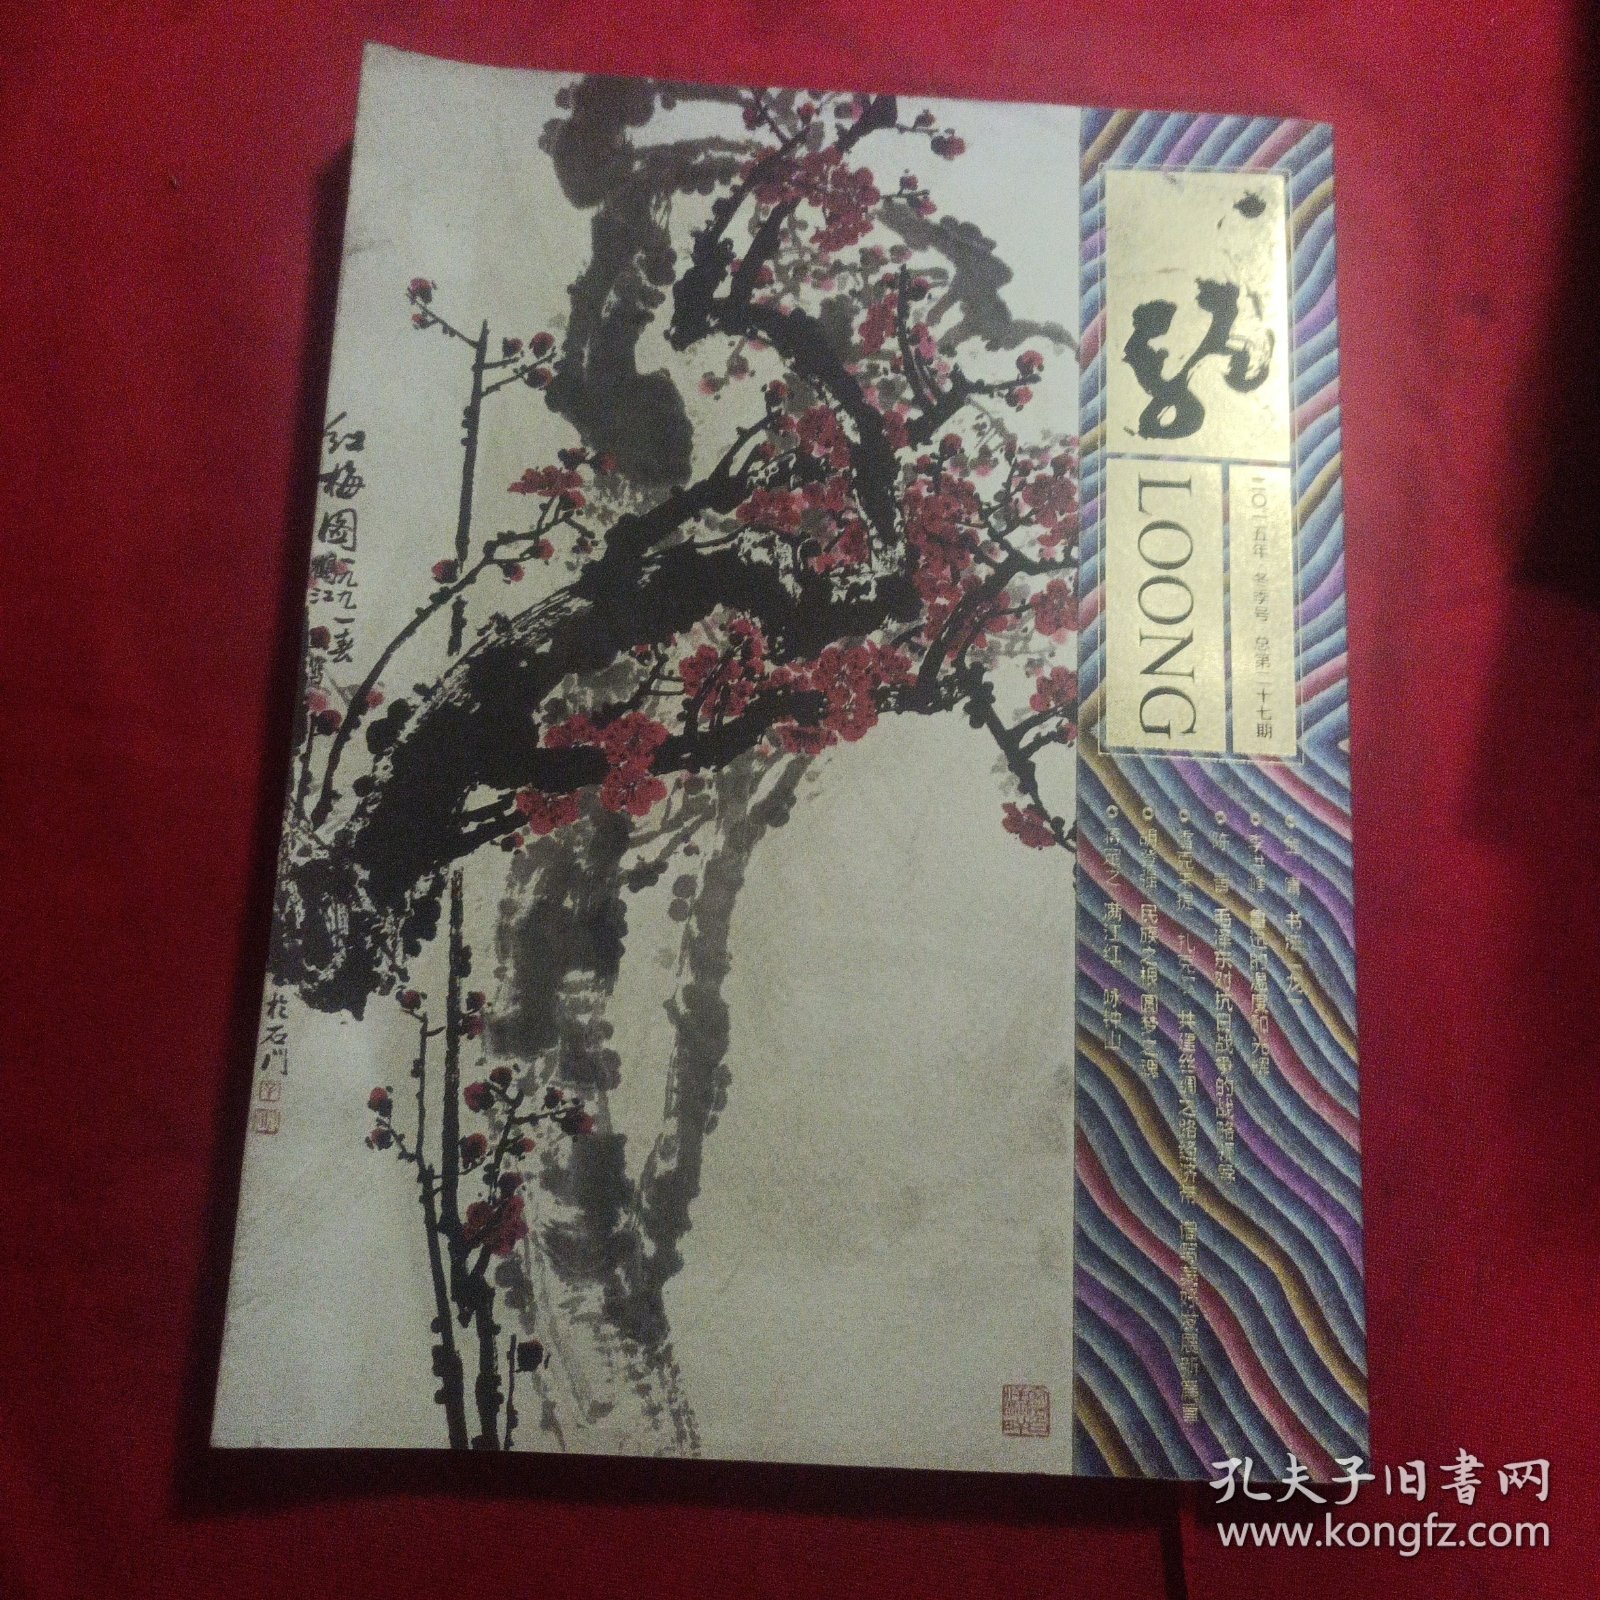 龙文化季刊二零一五冬季号